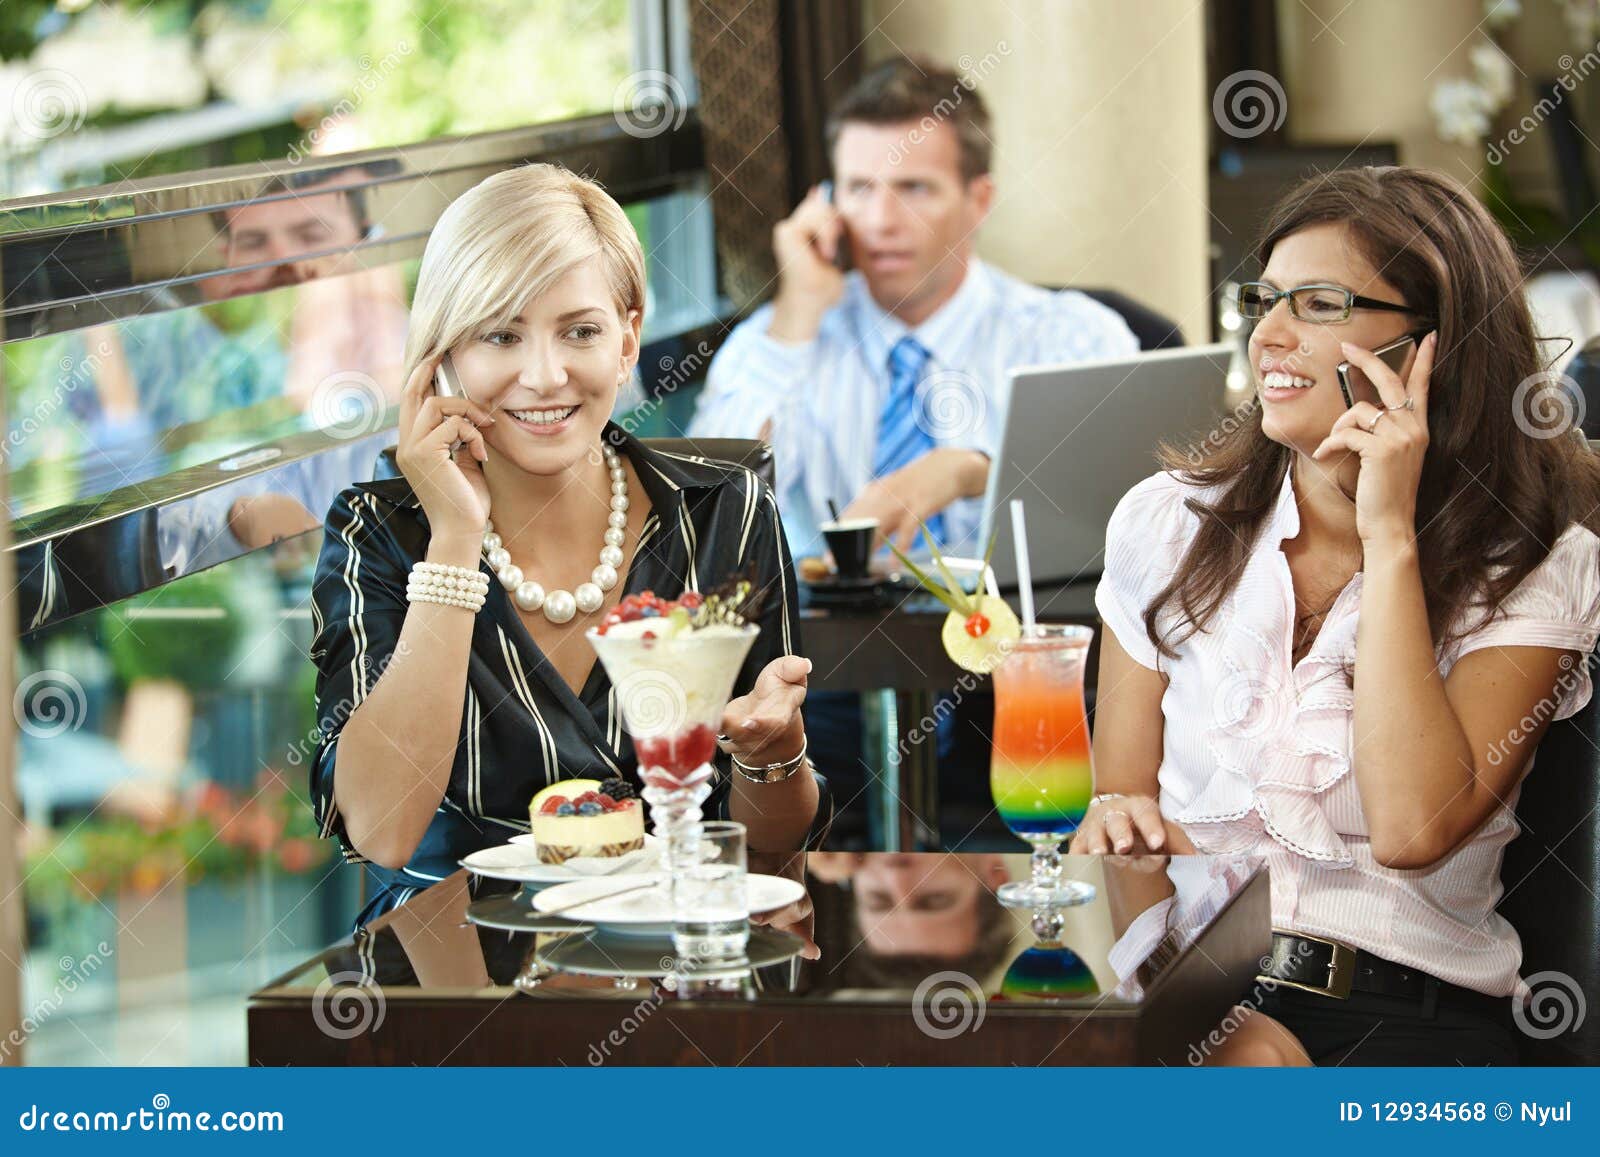 Она тоже телефон. Разговор в кафе. Девушки беседуют в кофейне. Человек сидит в телефоне в кафе. Встреча девочек в кафе.